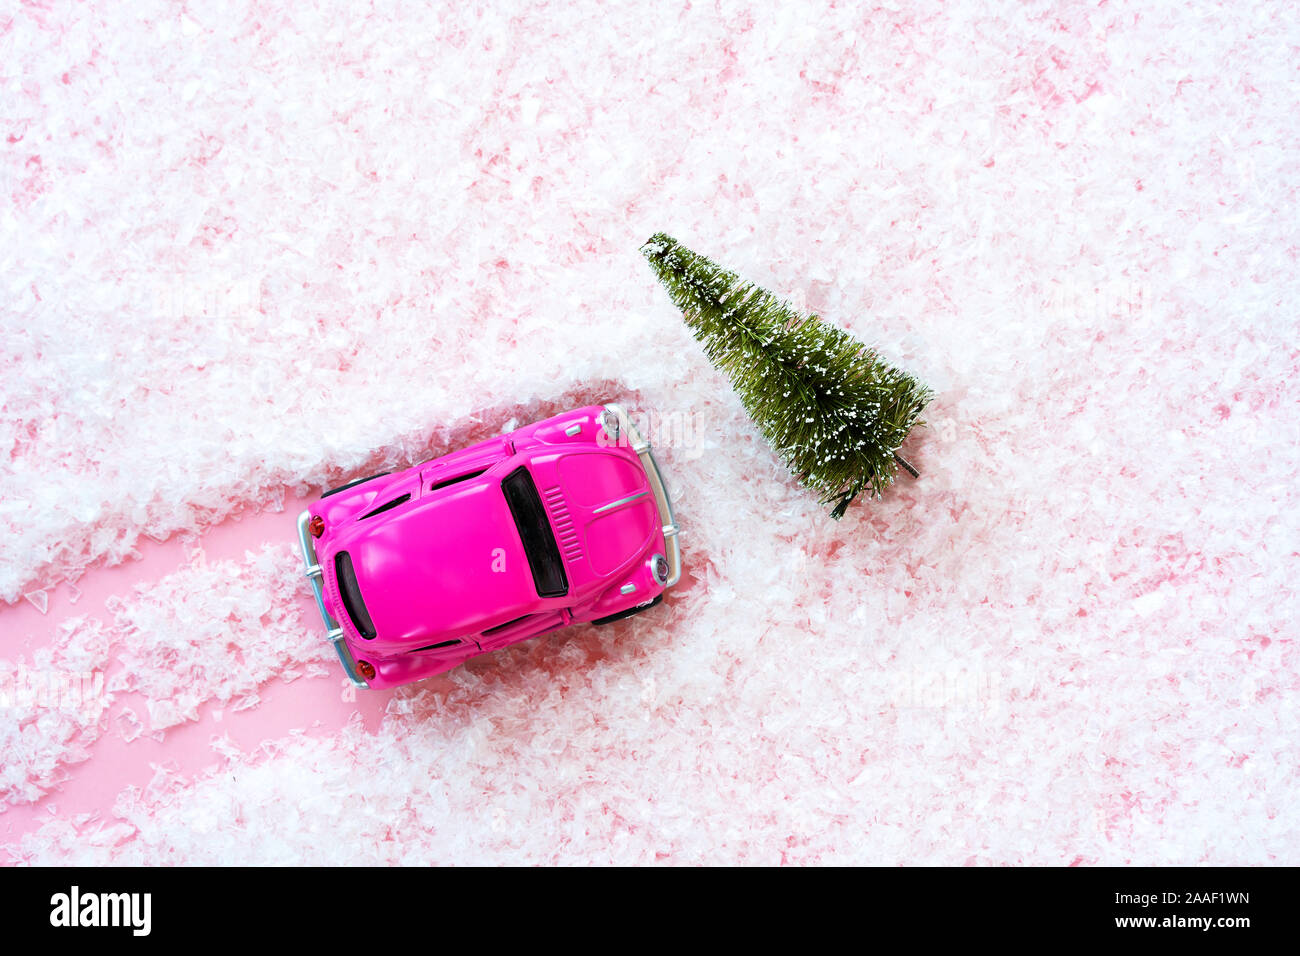 Kleines Spielzeug Kinder Auto und grünen Weihnachtsbaum auf dem rosafarbenen künstlichen Schnee bedeckt Stockfoto